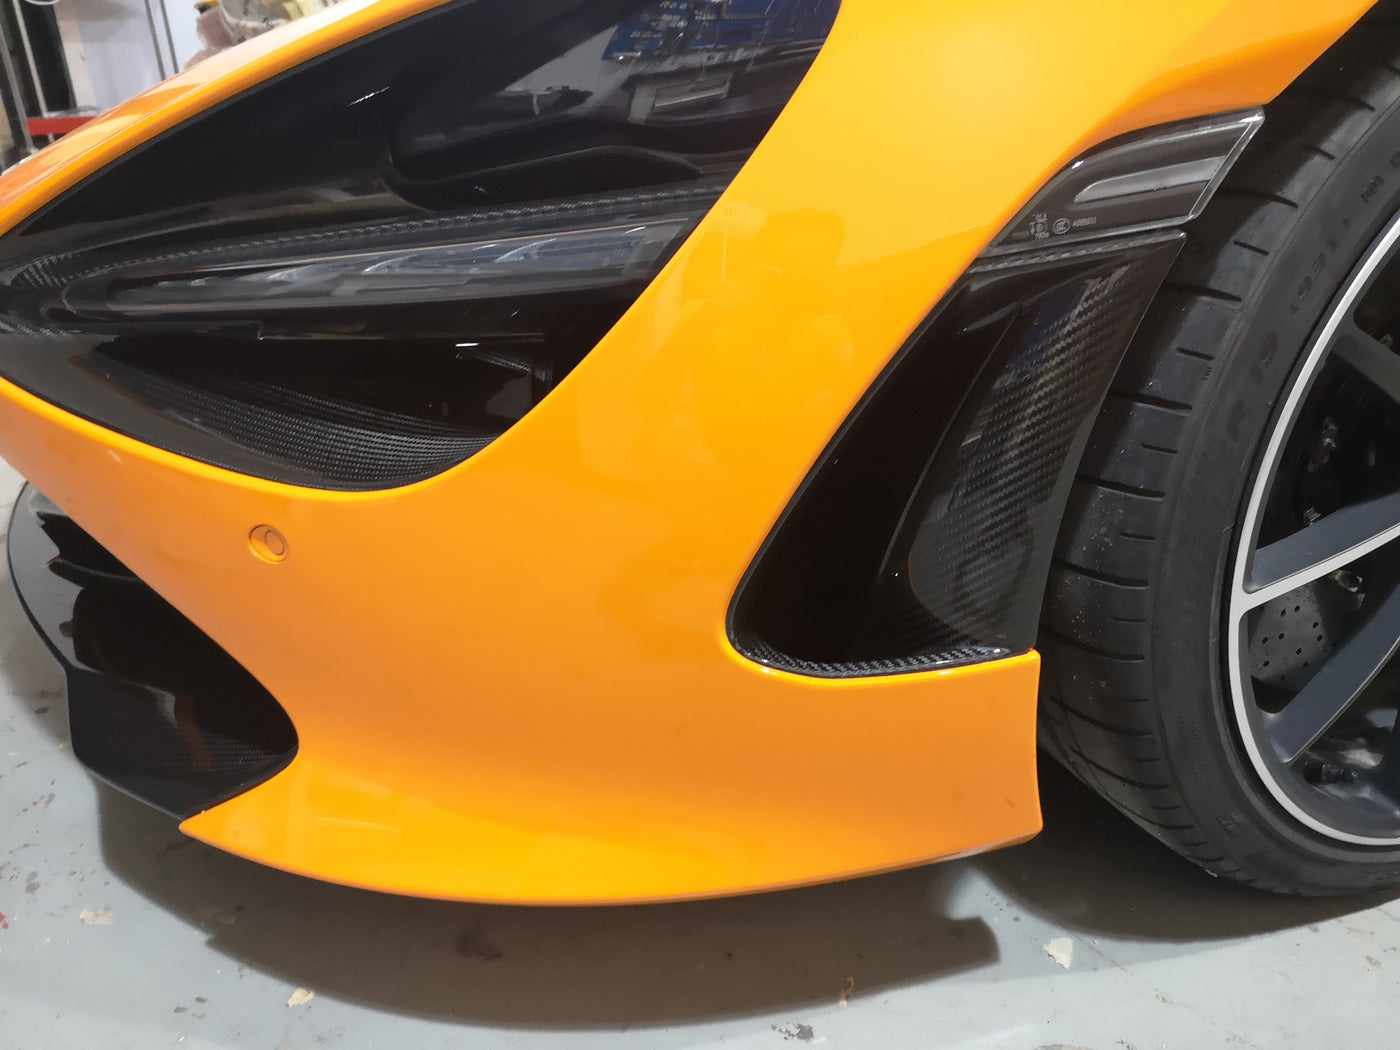 720S OEM Style Real carbon fiber Headlight Frame for McLaren